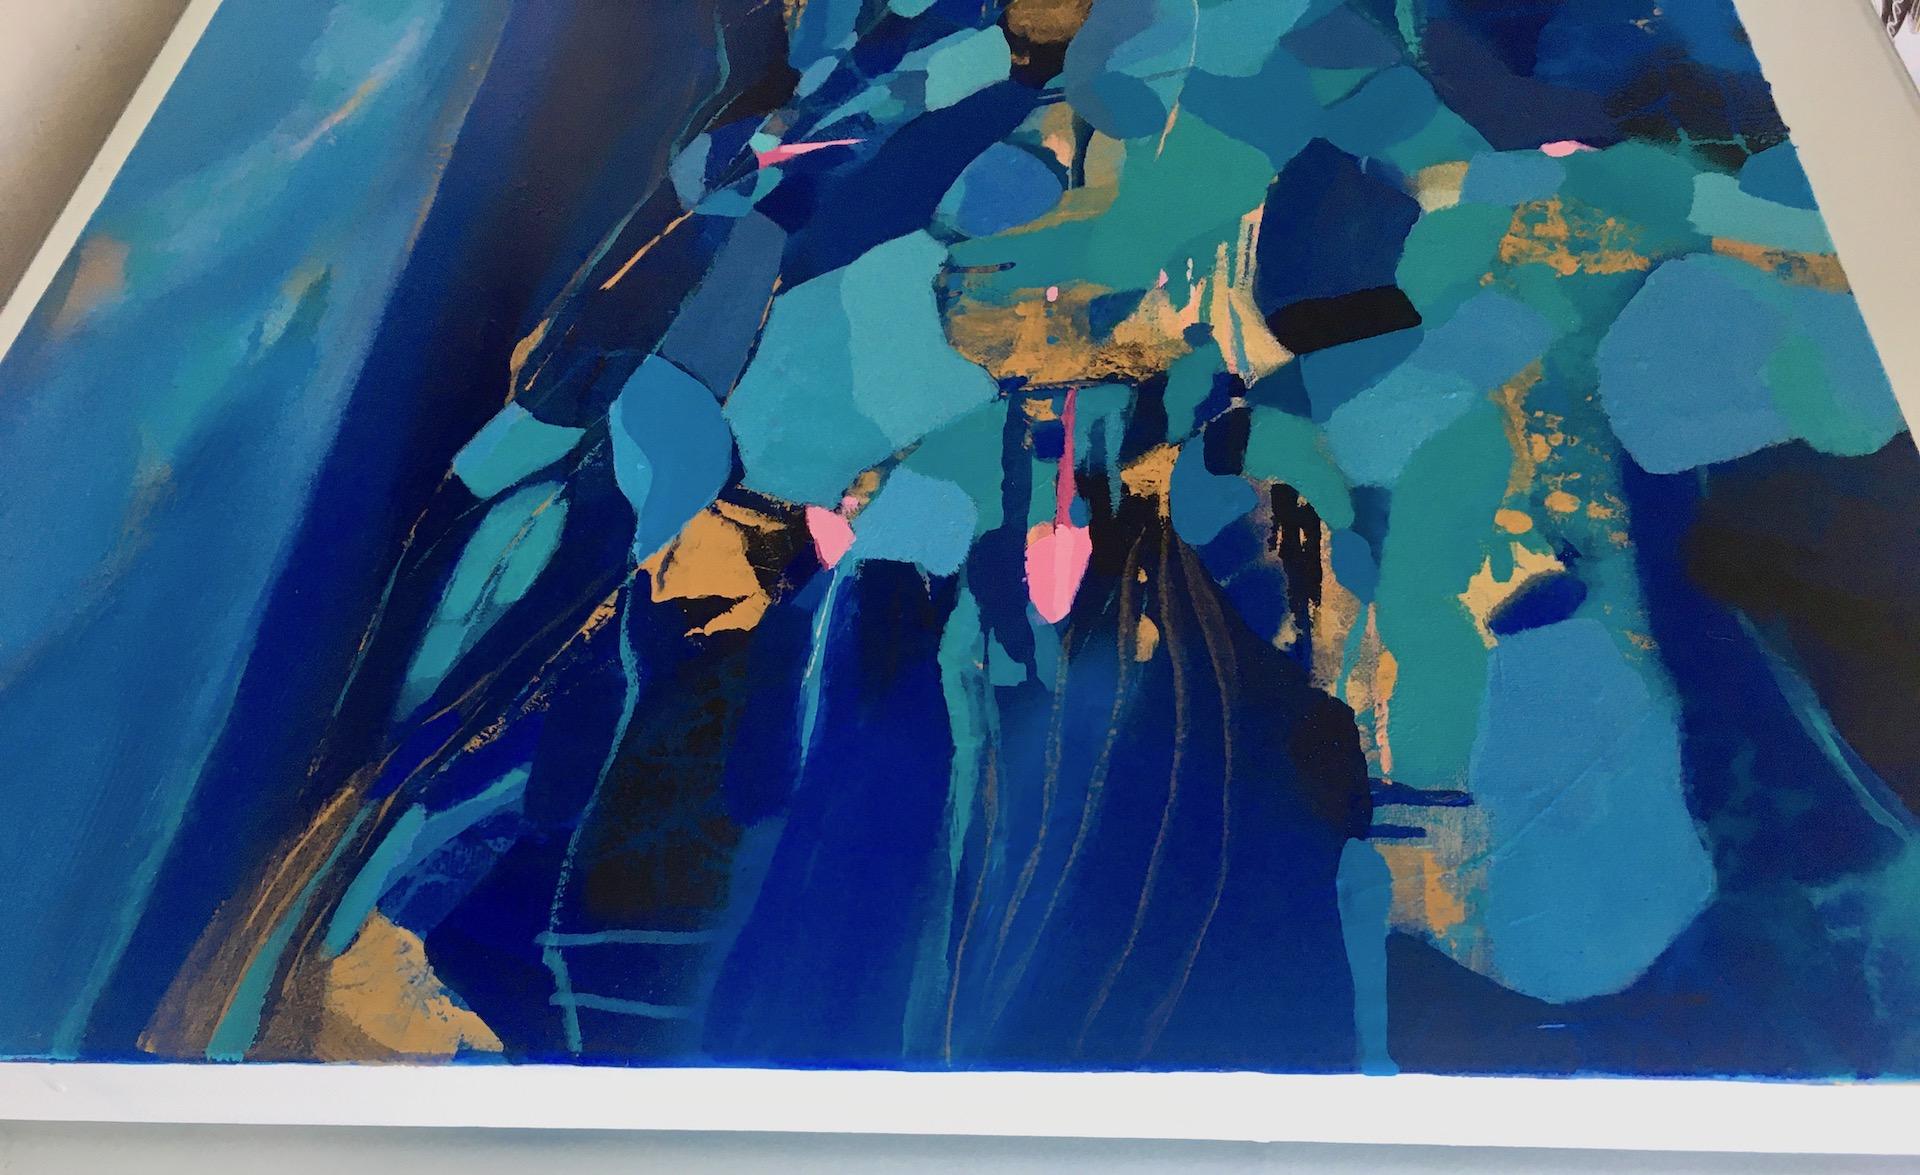 Tiffany Lynch
L'attrait du ciel et de la mer
Peinture abstraite originale
Peinture acrylique sur toile
Toile Taille : H 61cm x L 91cm
Vendu sans cadre
Prêt à être accroché
Veuillez noter que les images insitu ne sont qu'une indication de l'aspect